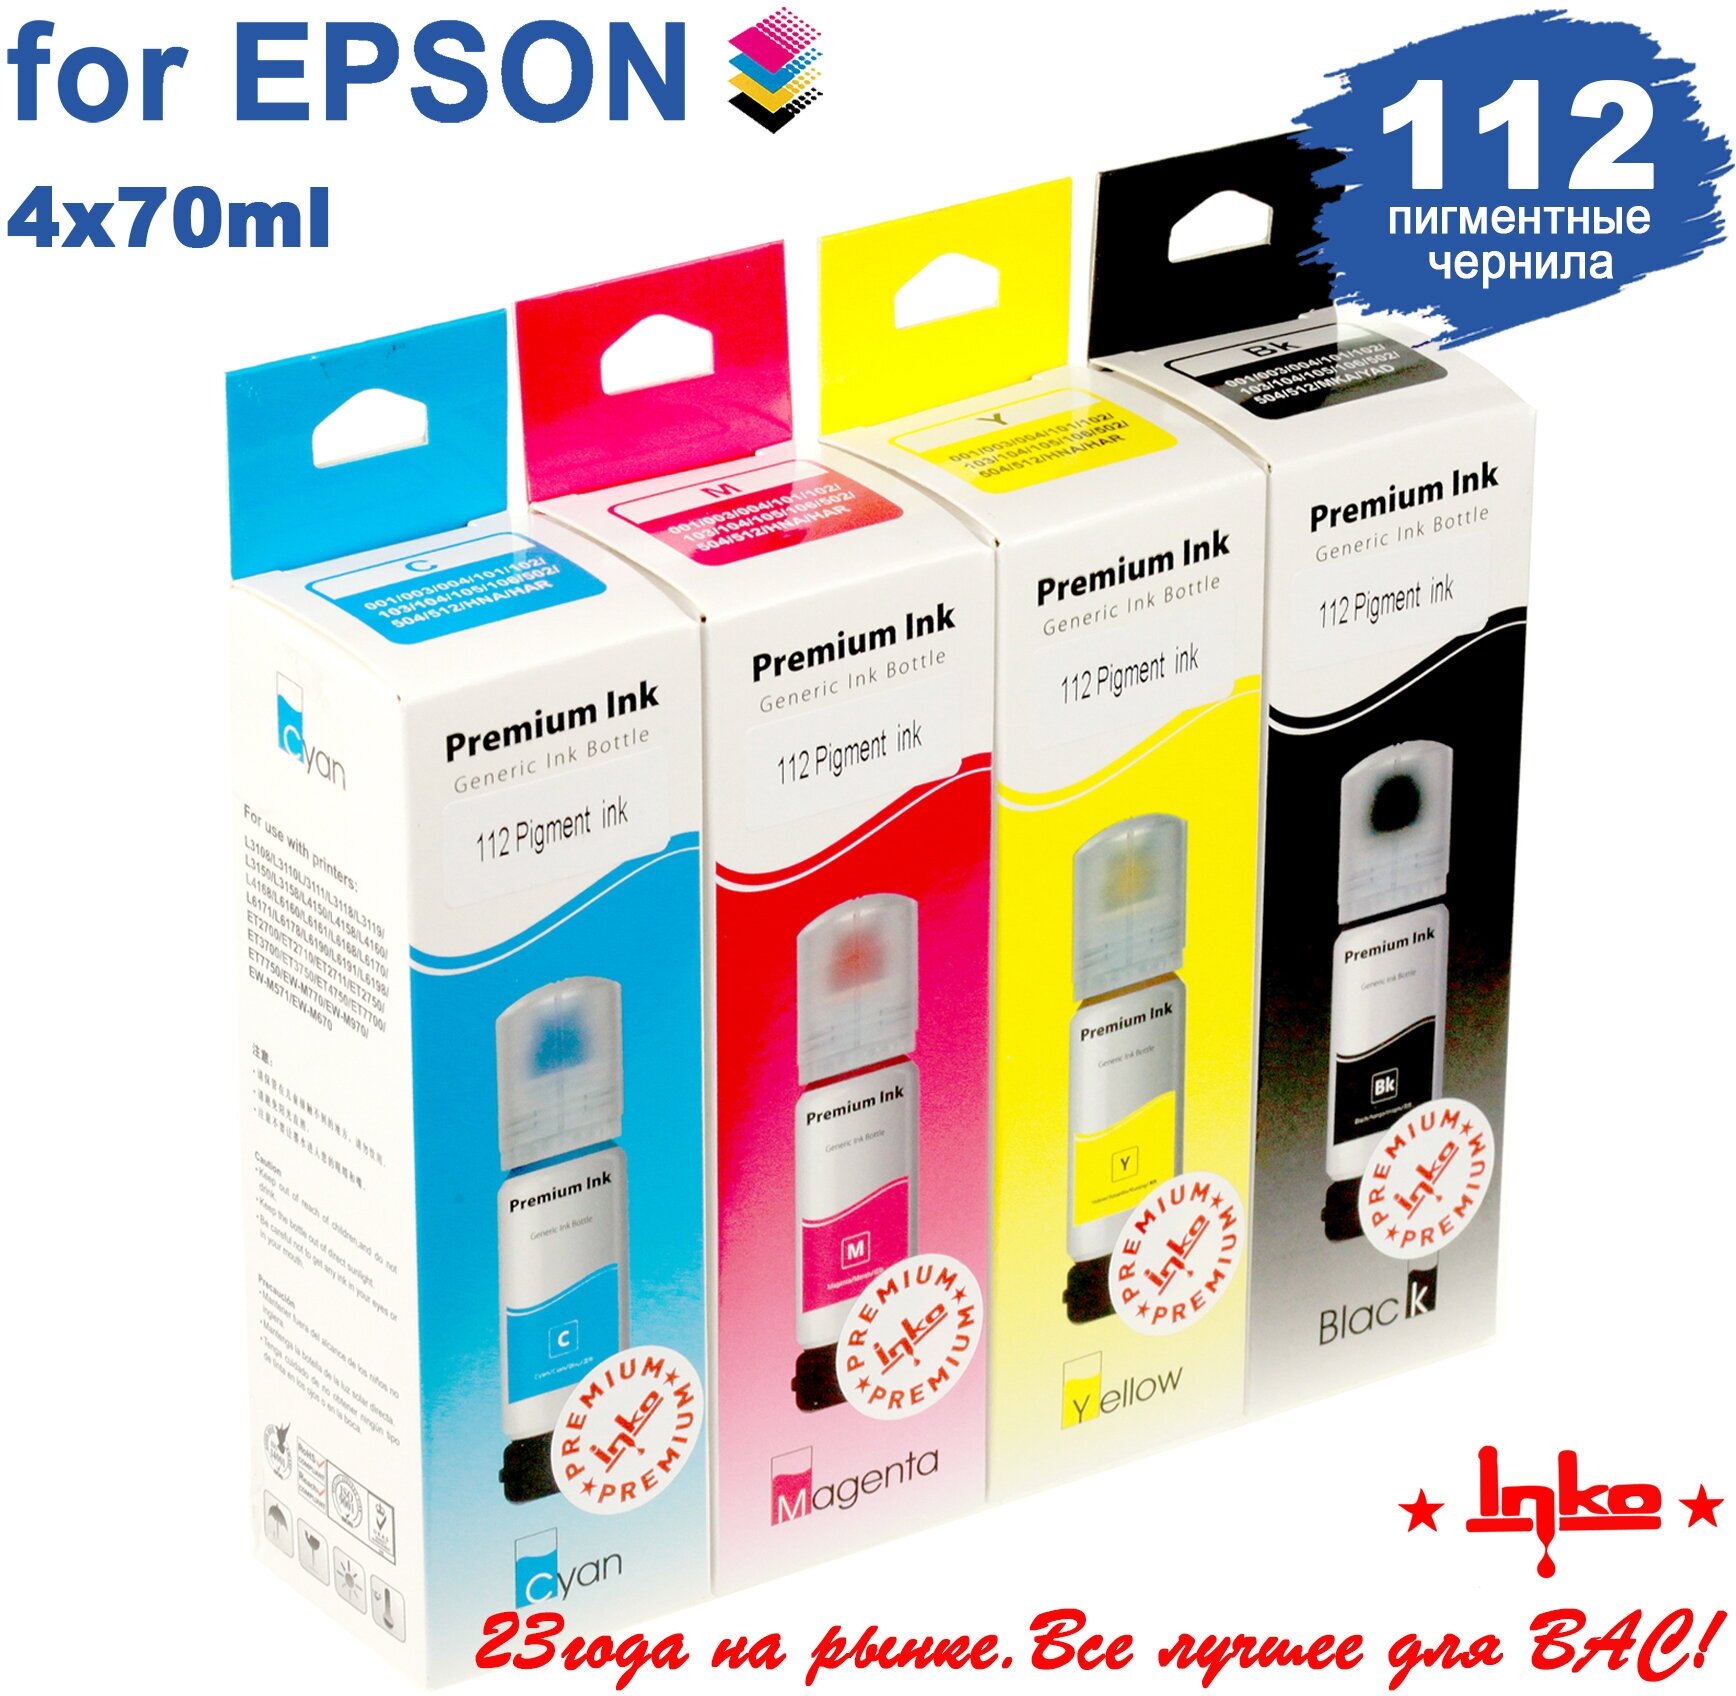 Чернила для Epson 112 INKO для L15150/L15160/L6490 (Eco Tank, 70g) Pigment комплект 4 цвета